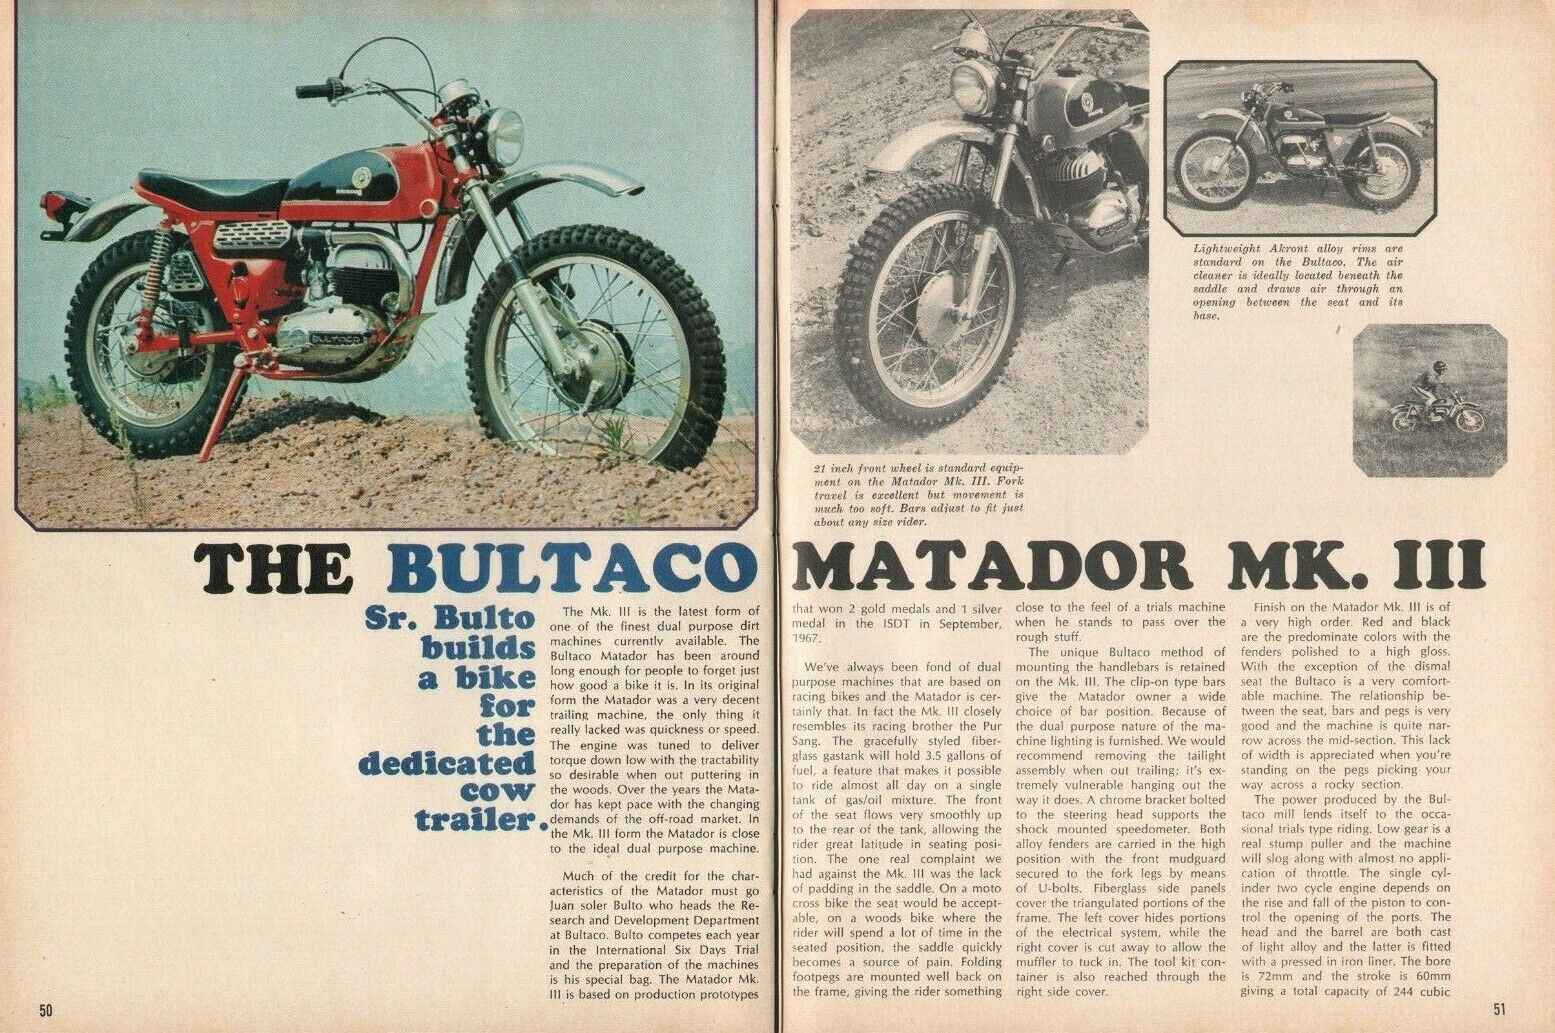 1969 Bultaco Matador Mk Iii - 4-page Vintage Motorcycle Road Test Article